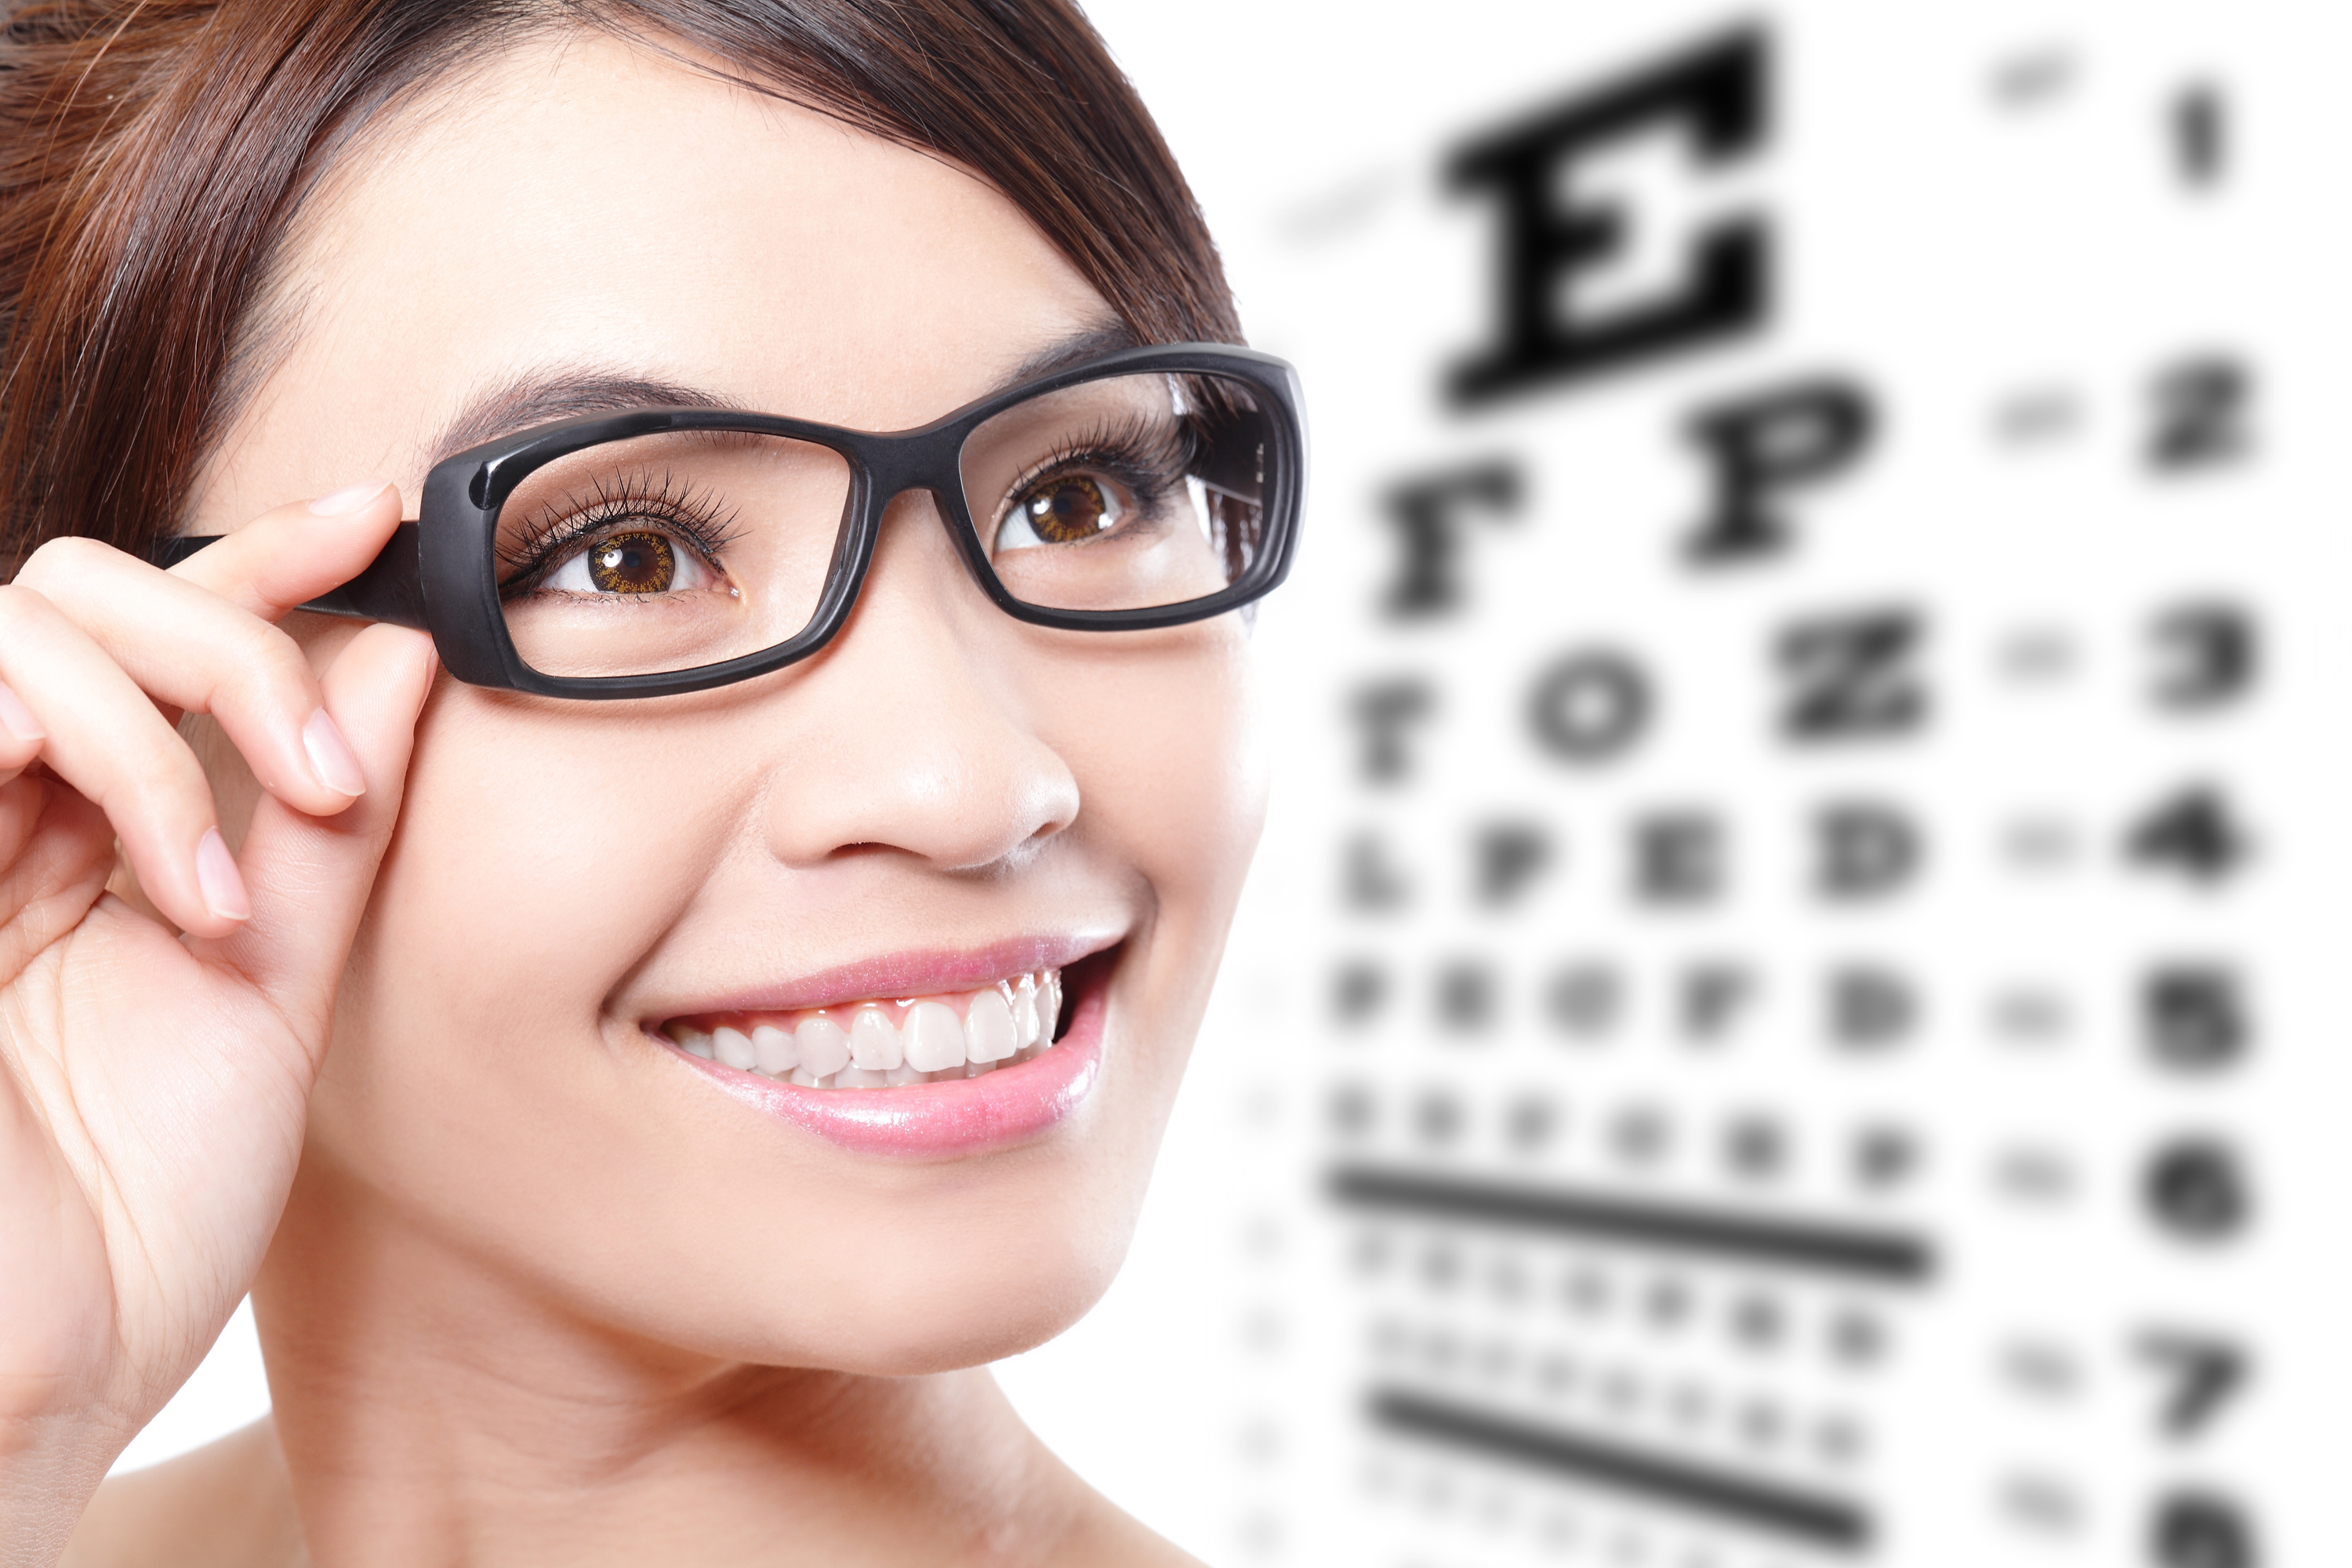 Зрение 9 10. Оптика очки для зрения. Реклама очков для зрения. Девушка в очках для зрения. Очки для дальнозоркости.